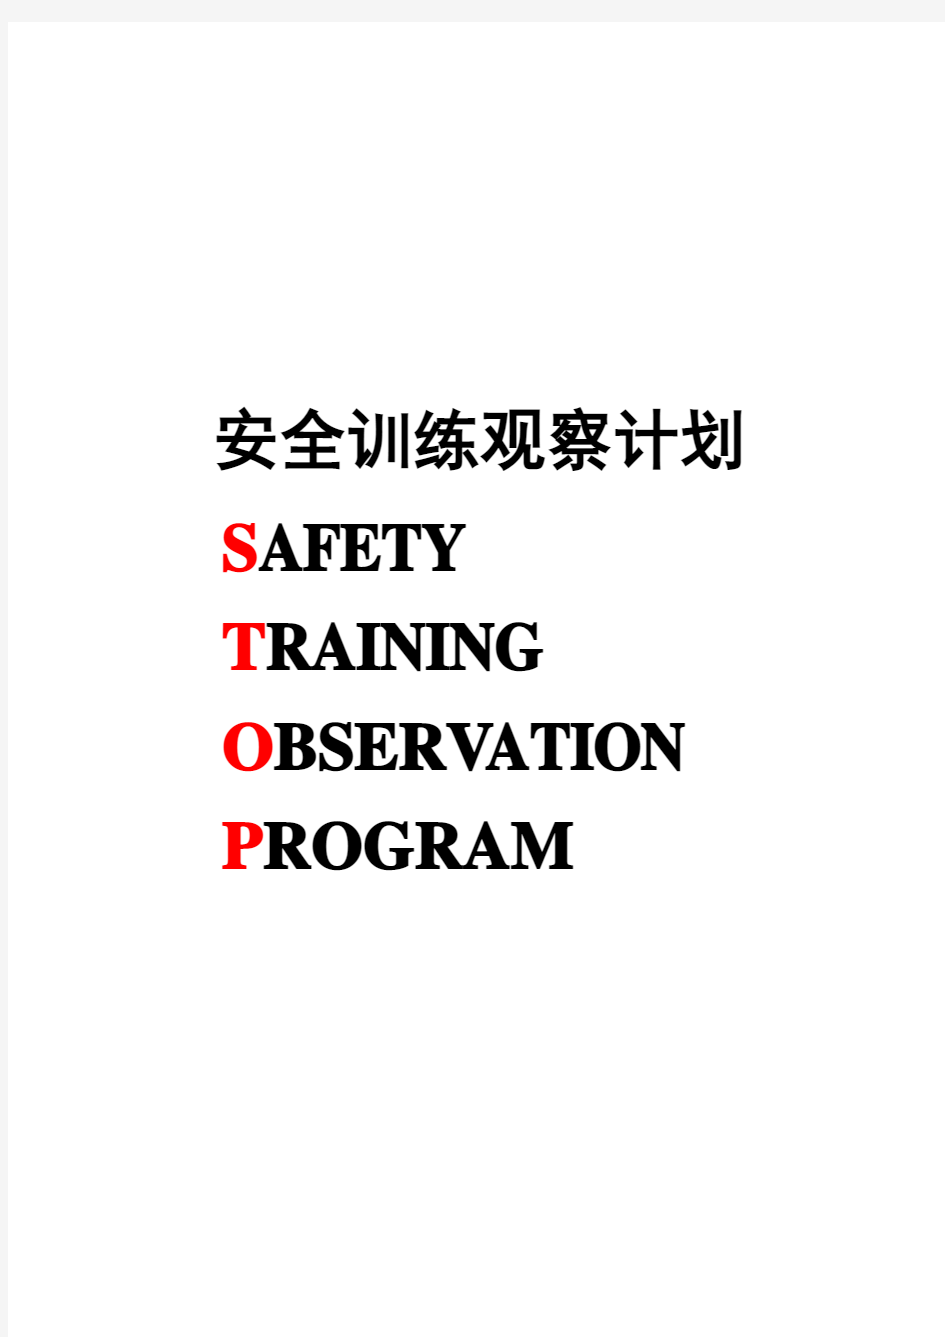 杜邦安全训练观察计划(参考资料)